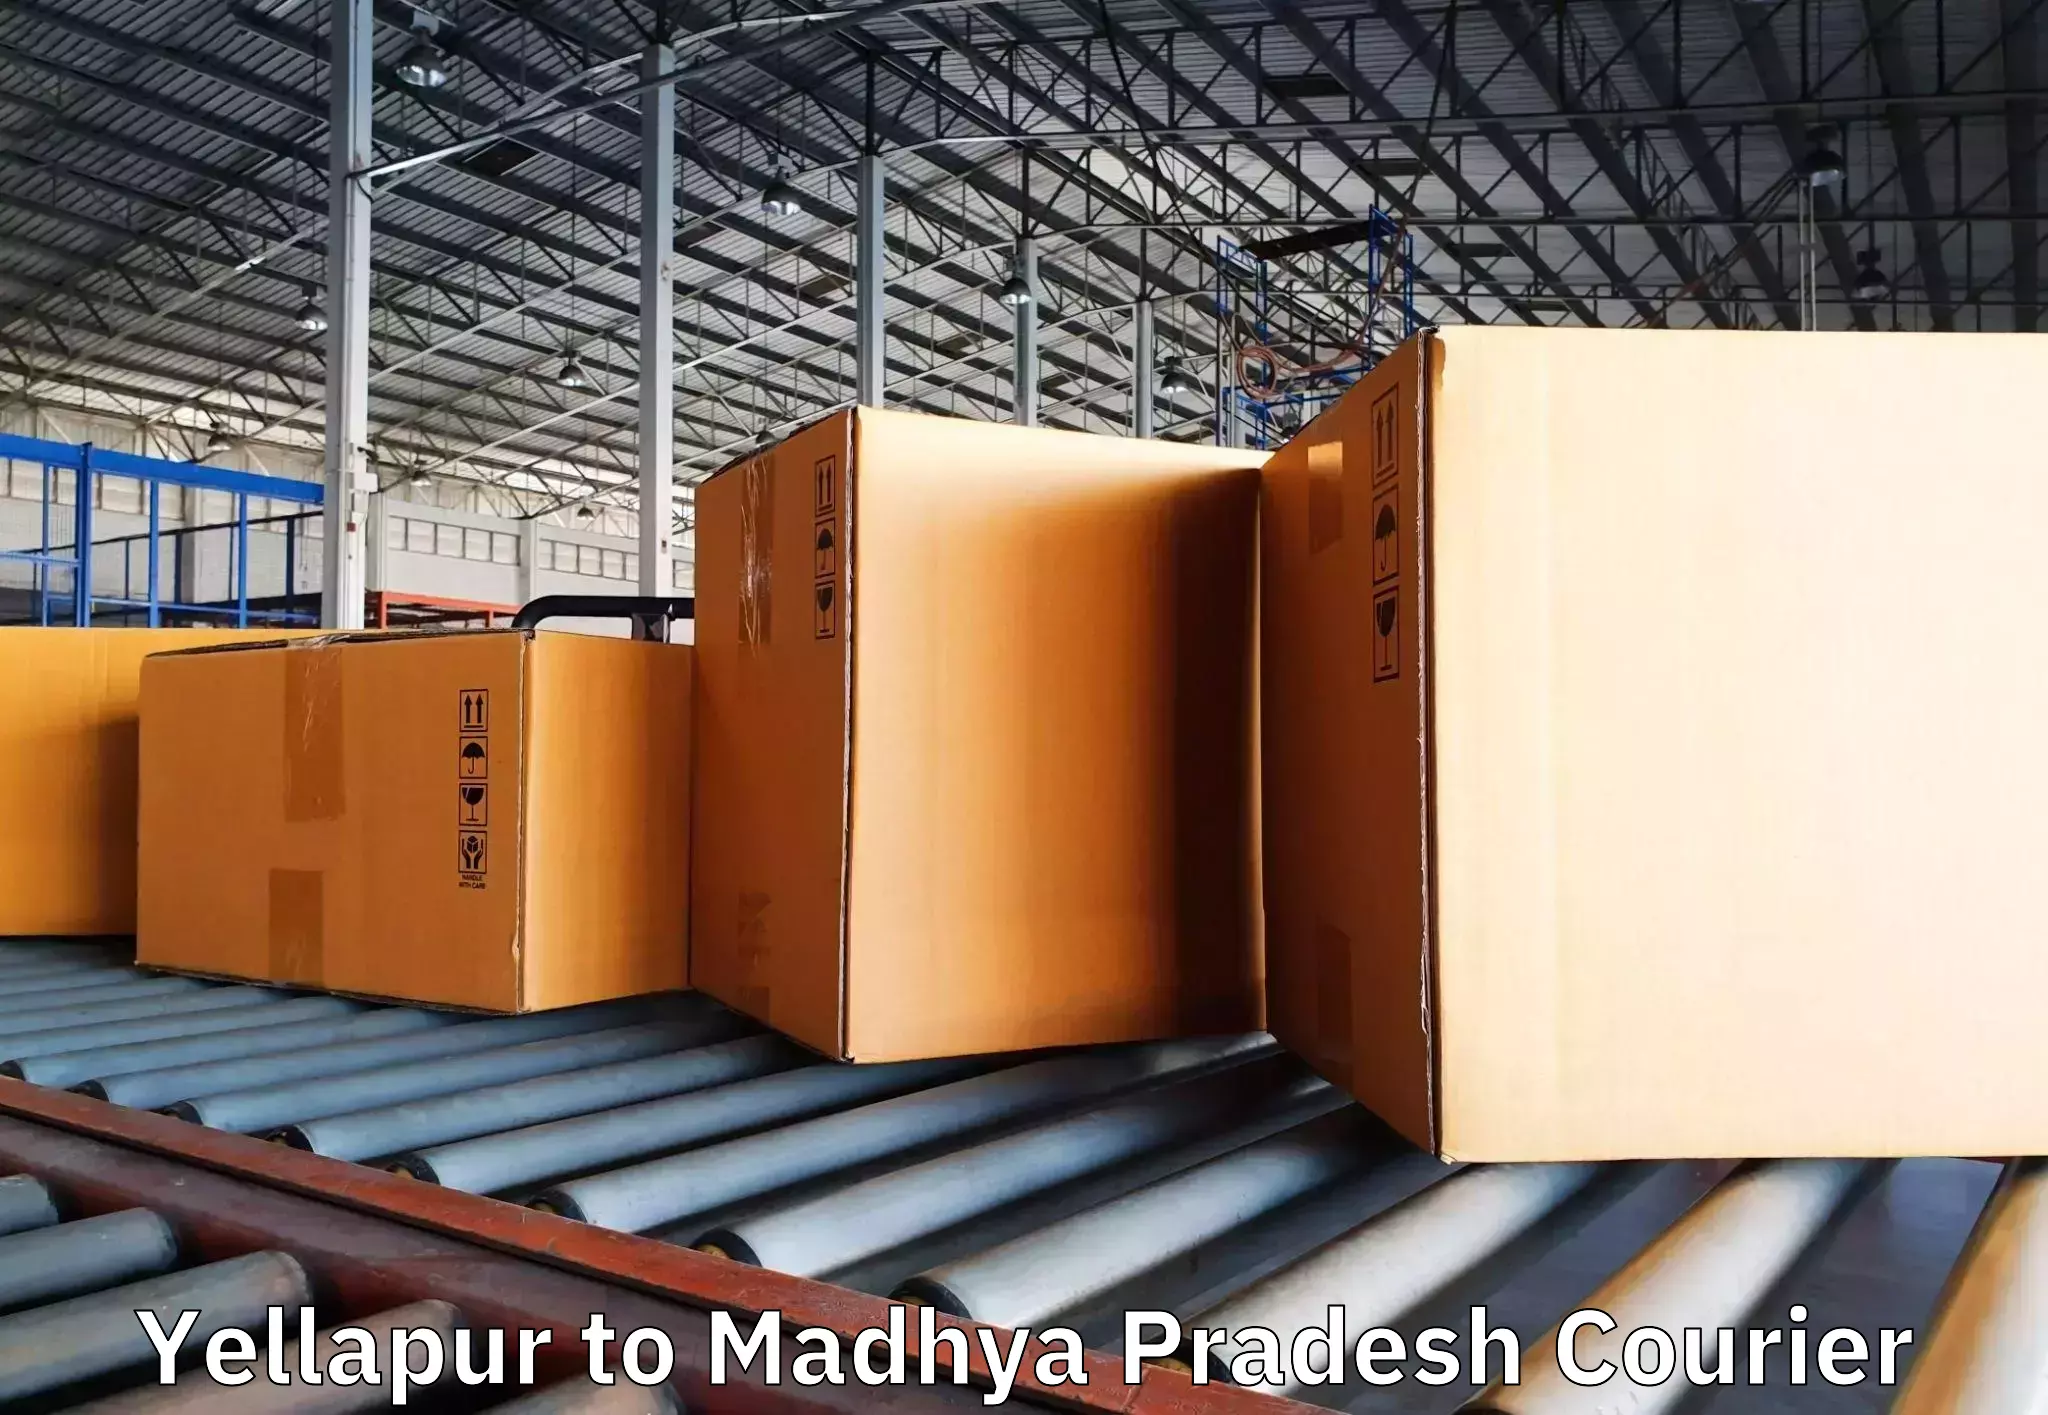 Furniture moving experts Yellapur to Niwari